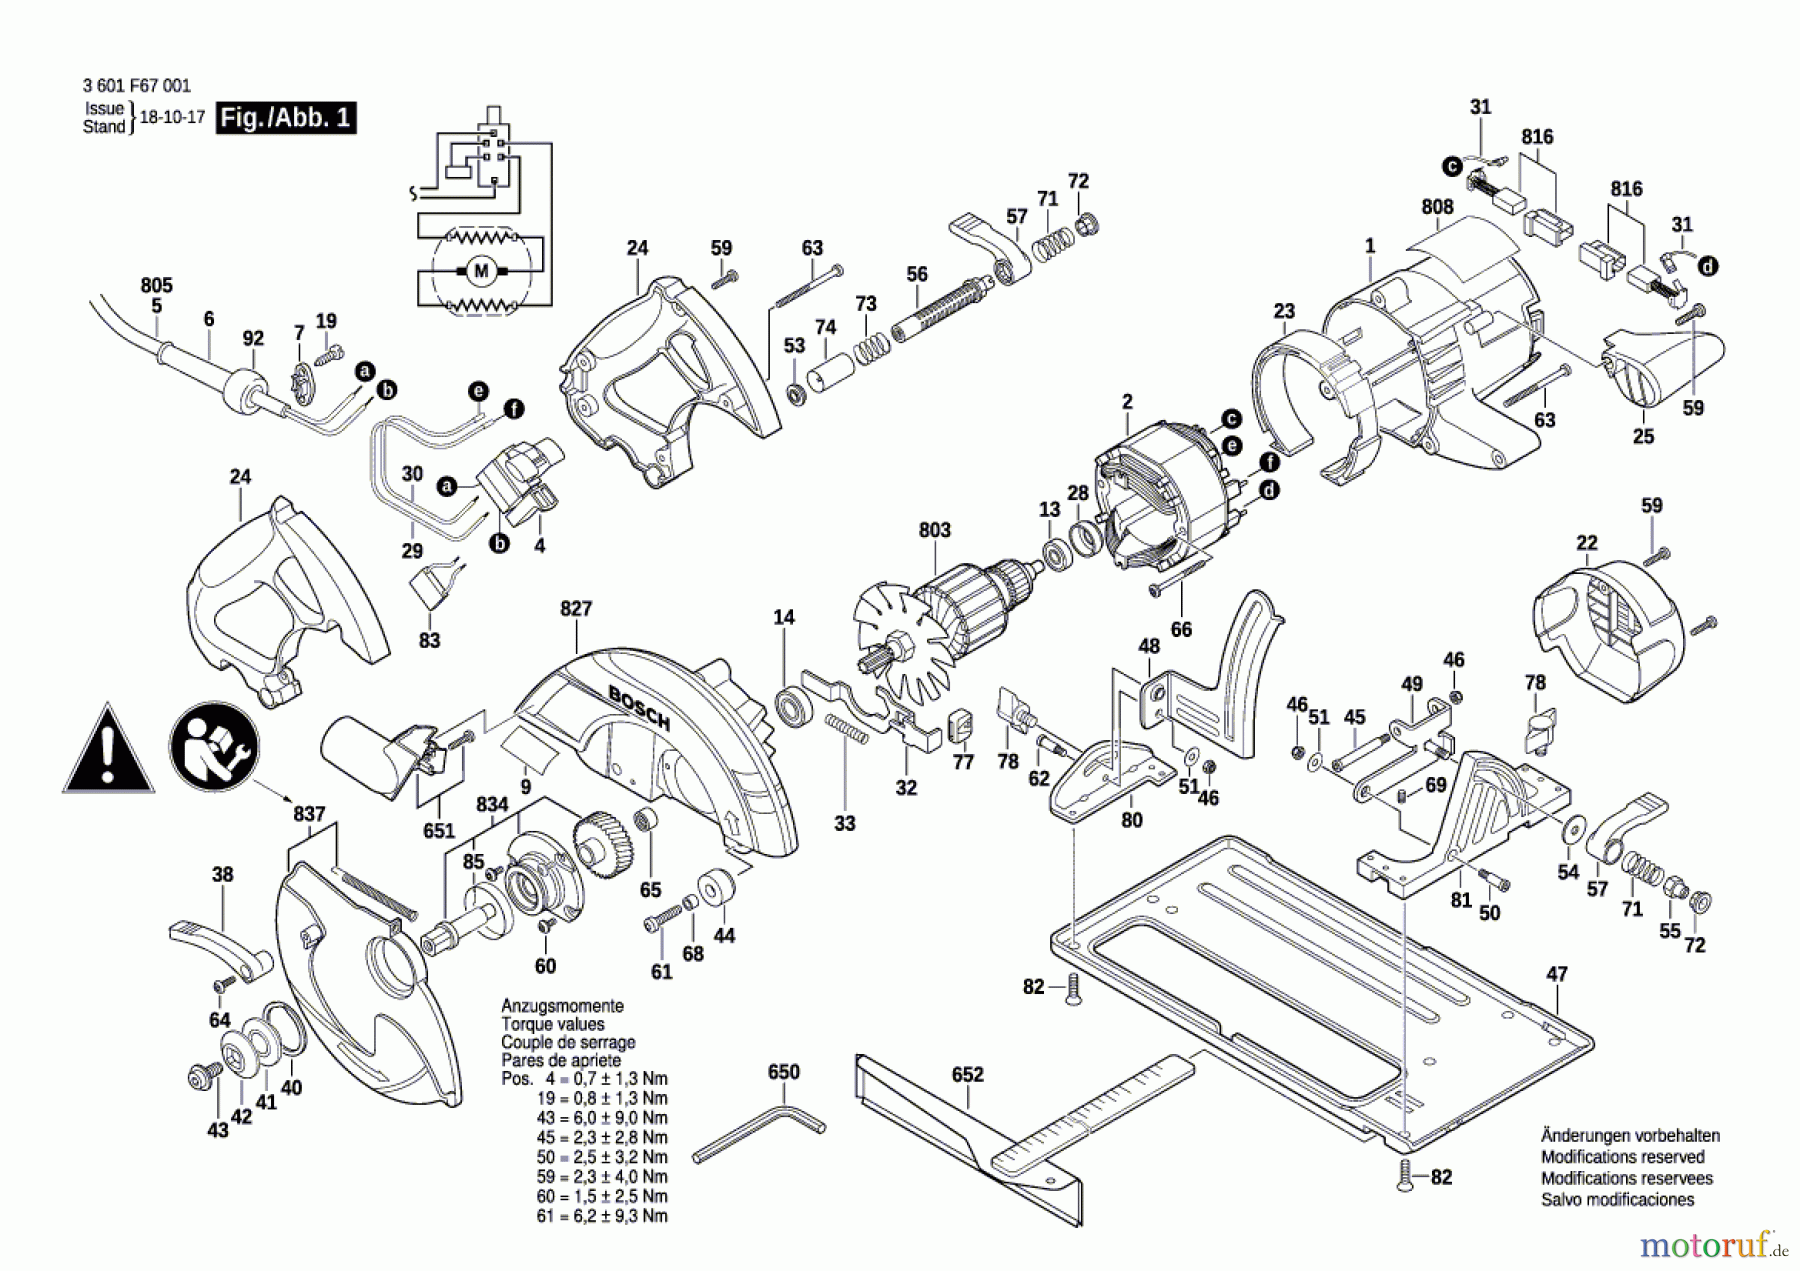  Bosch Werkzeug Handkreissäge GKS 65 Seite 1